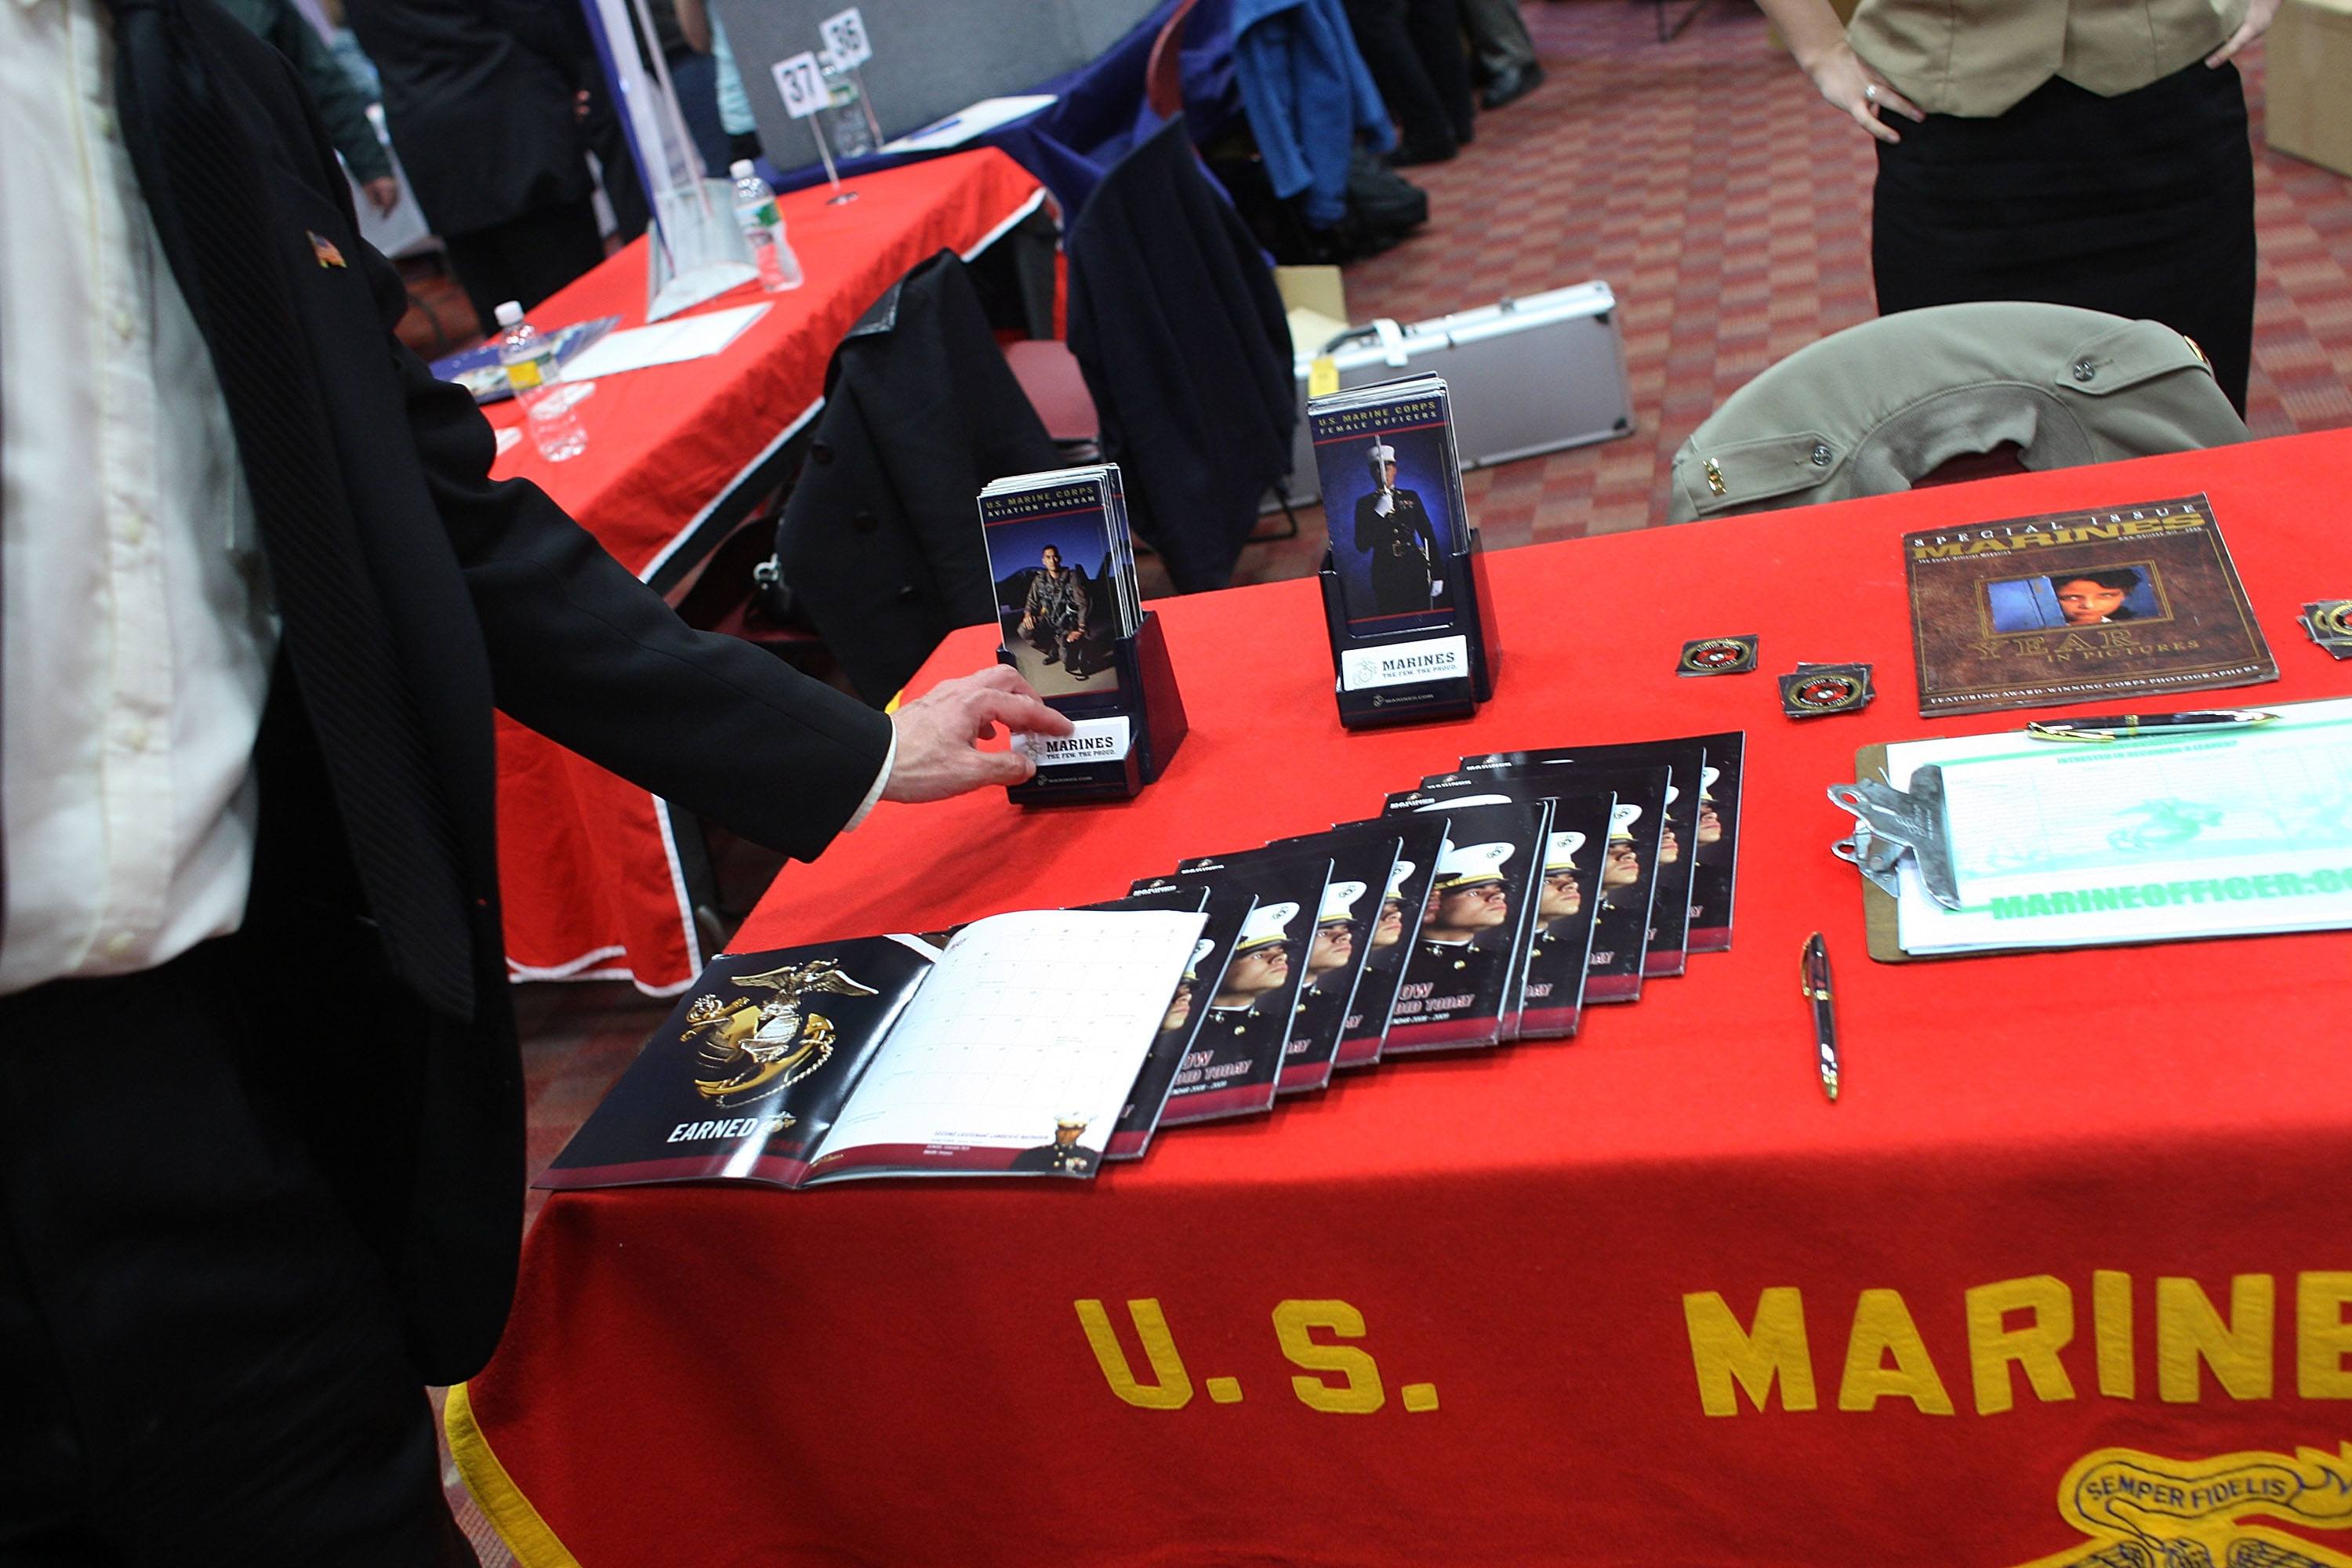 Military recruiting Marines